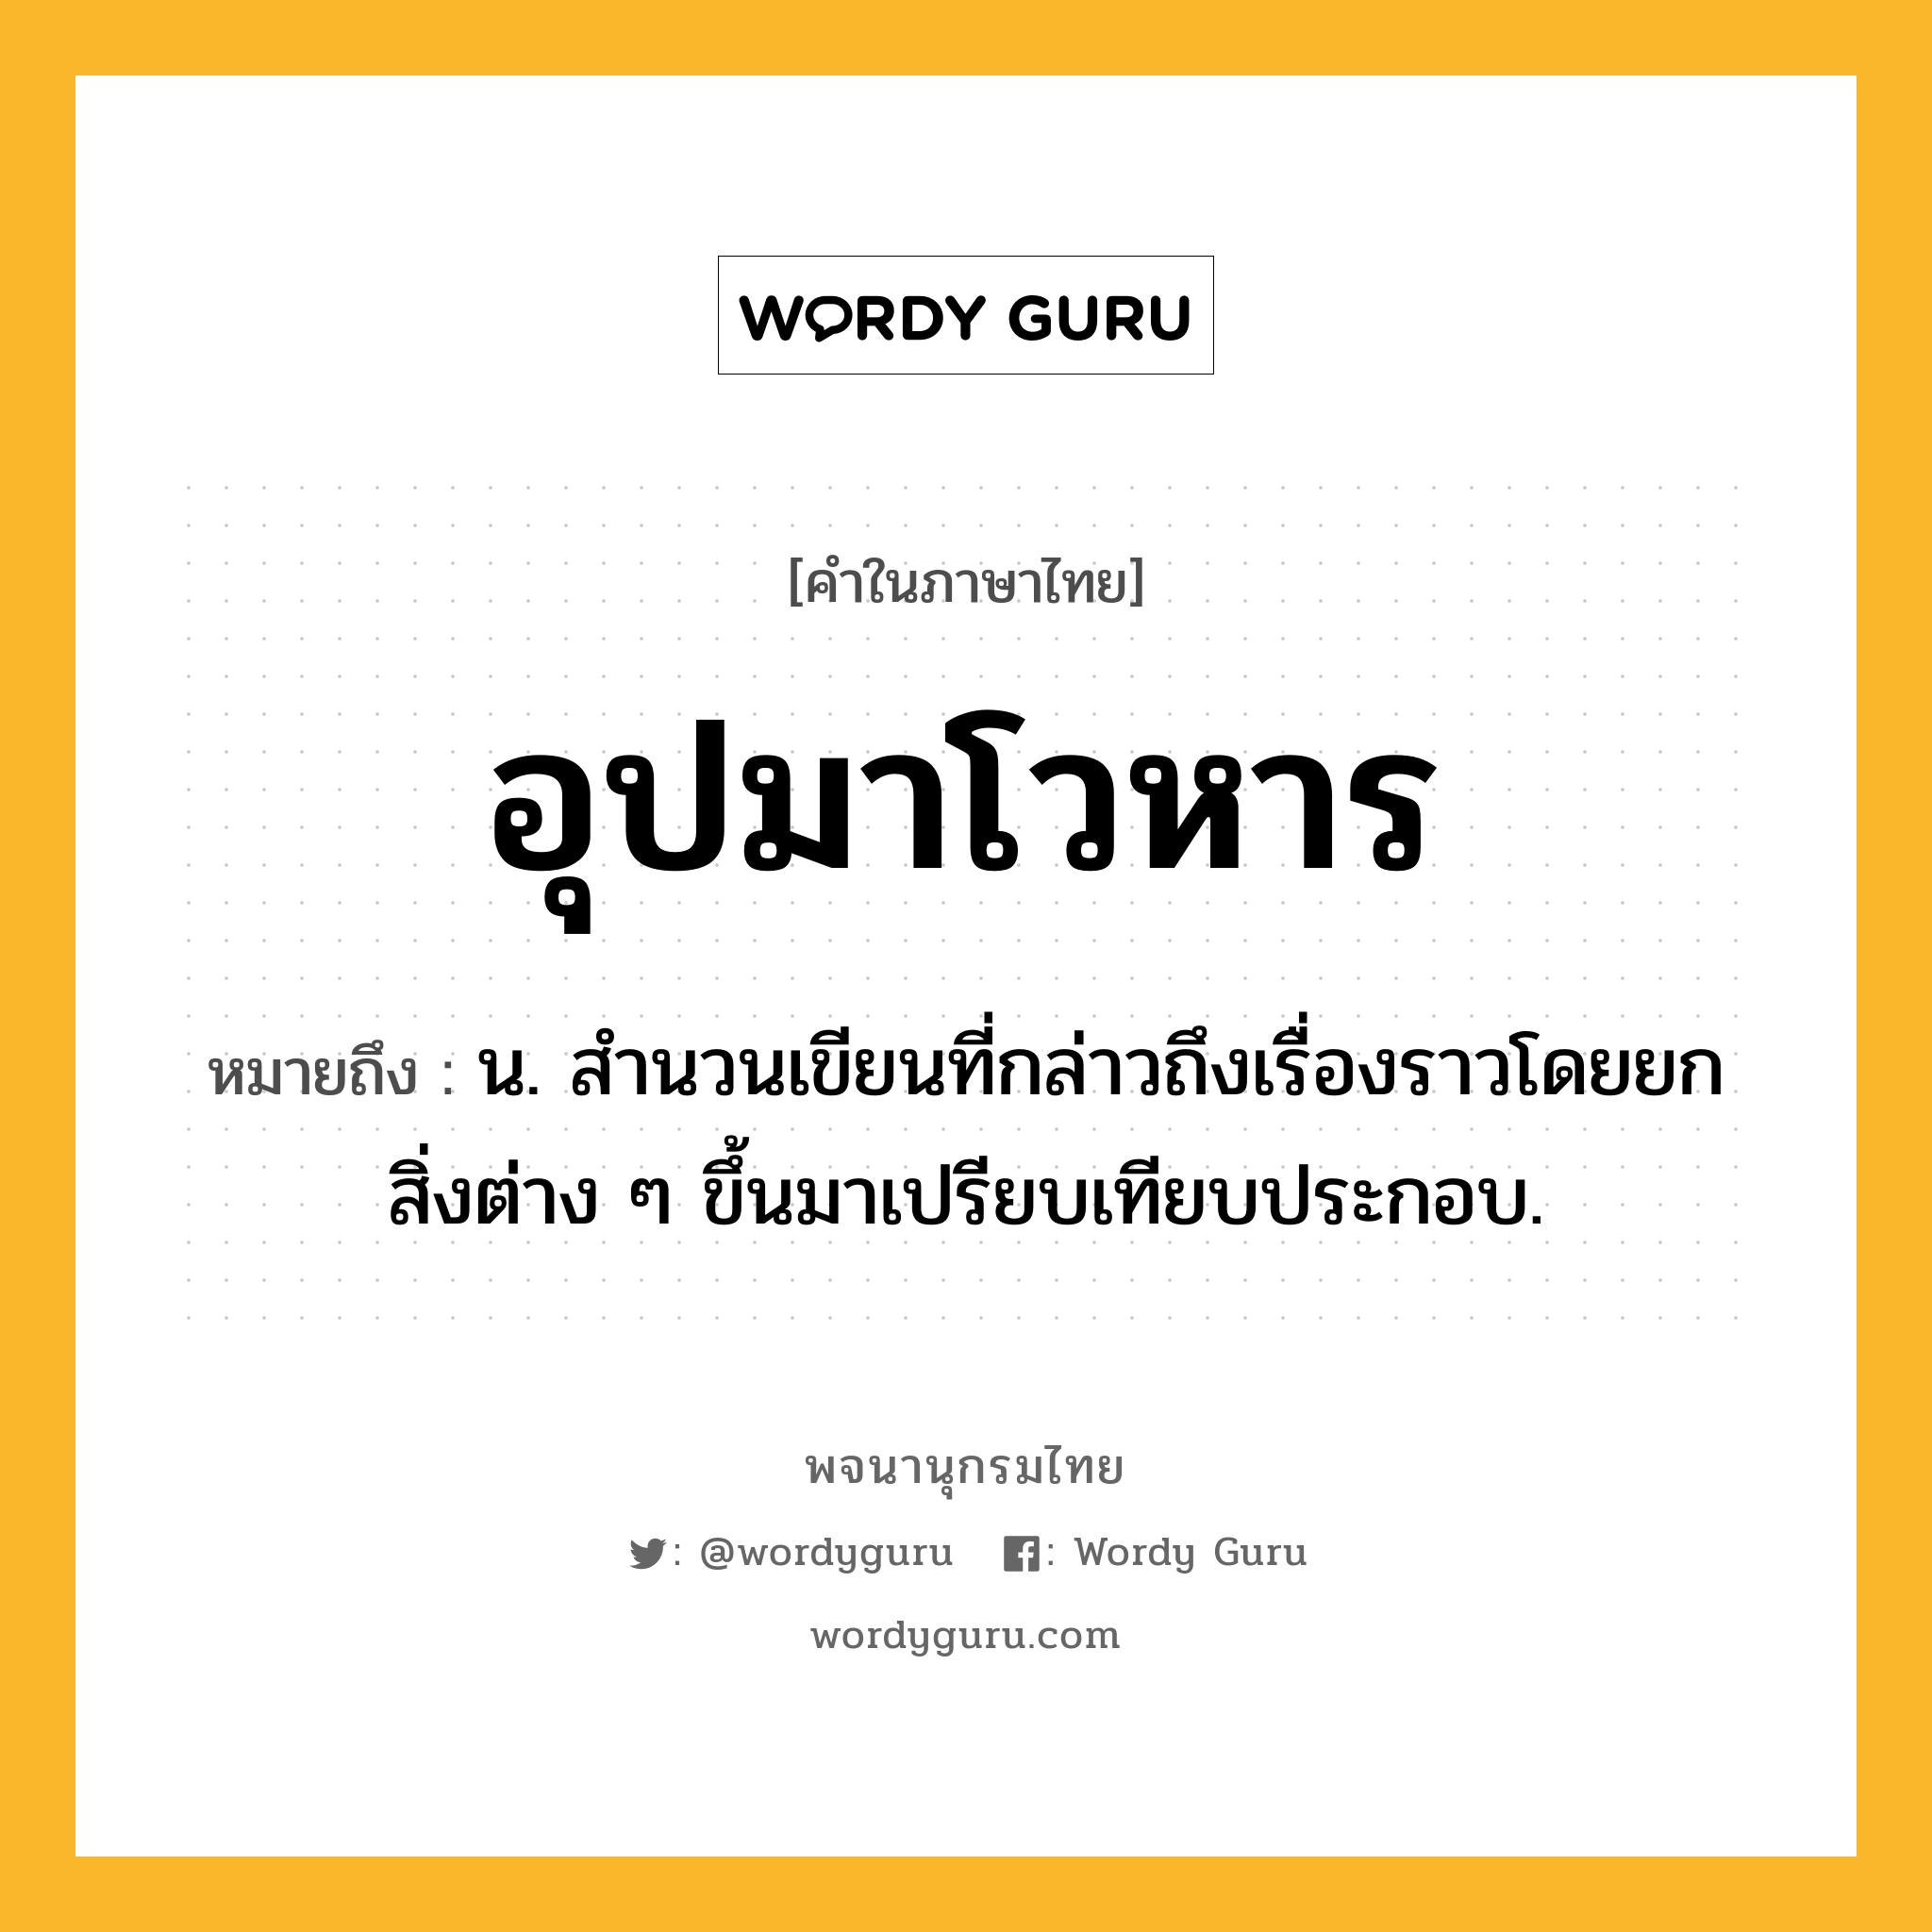 อุปมาโวหาร หมายถึงอะไร?, คำในภาษาไทย อุปมาโวหาร หมายถึง น. สํานวนเขียนที่กล่าวถึงเรื่องราวโดยยกสิ่งต่าง ๆ ขึ้นมาเปรียบเทียบประกอบ.